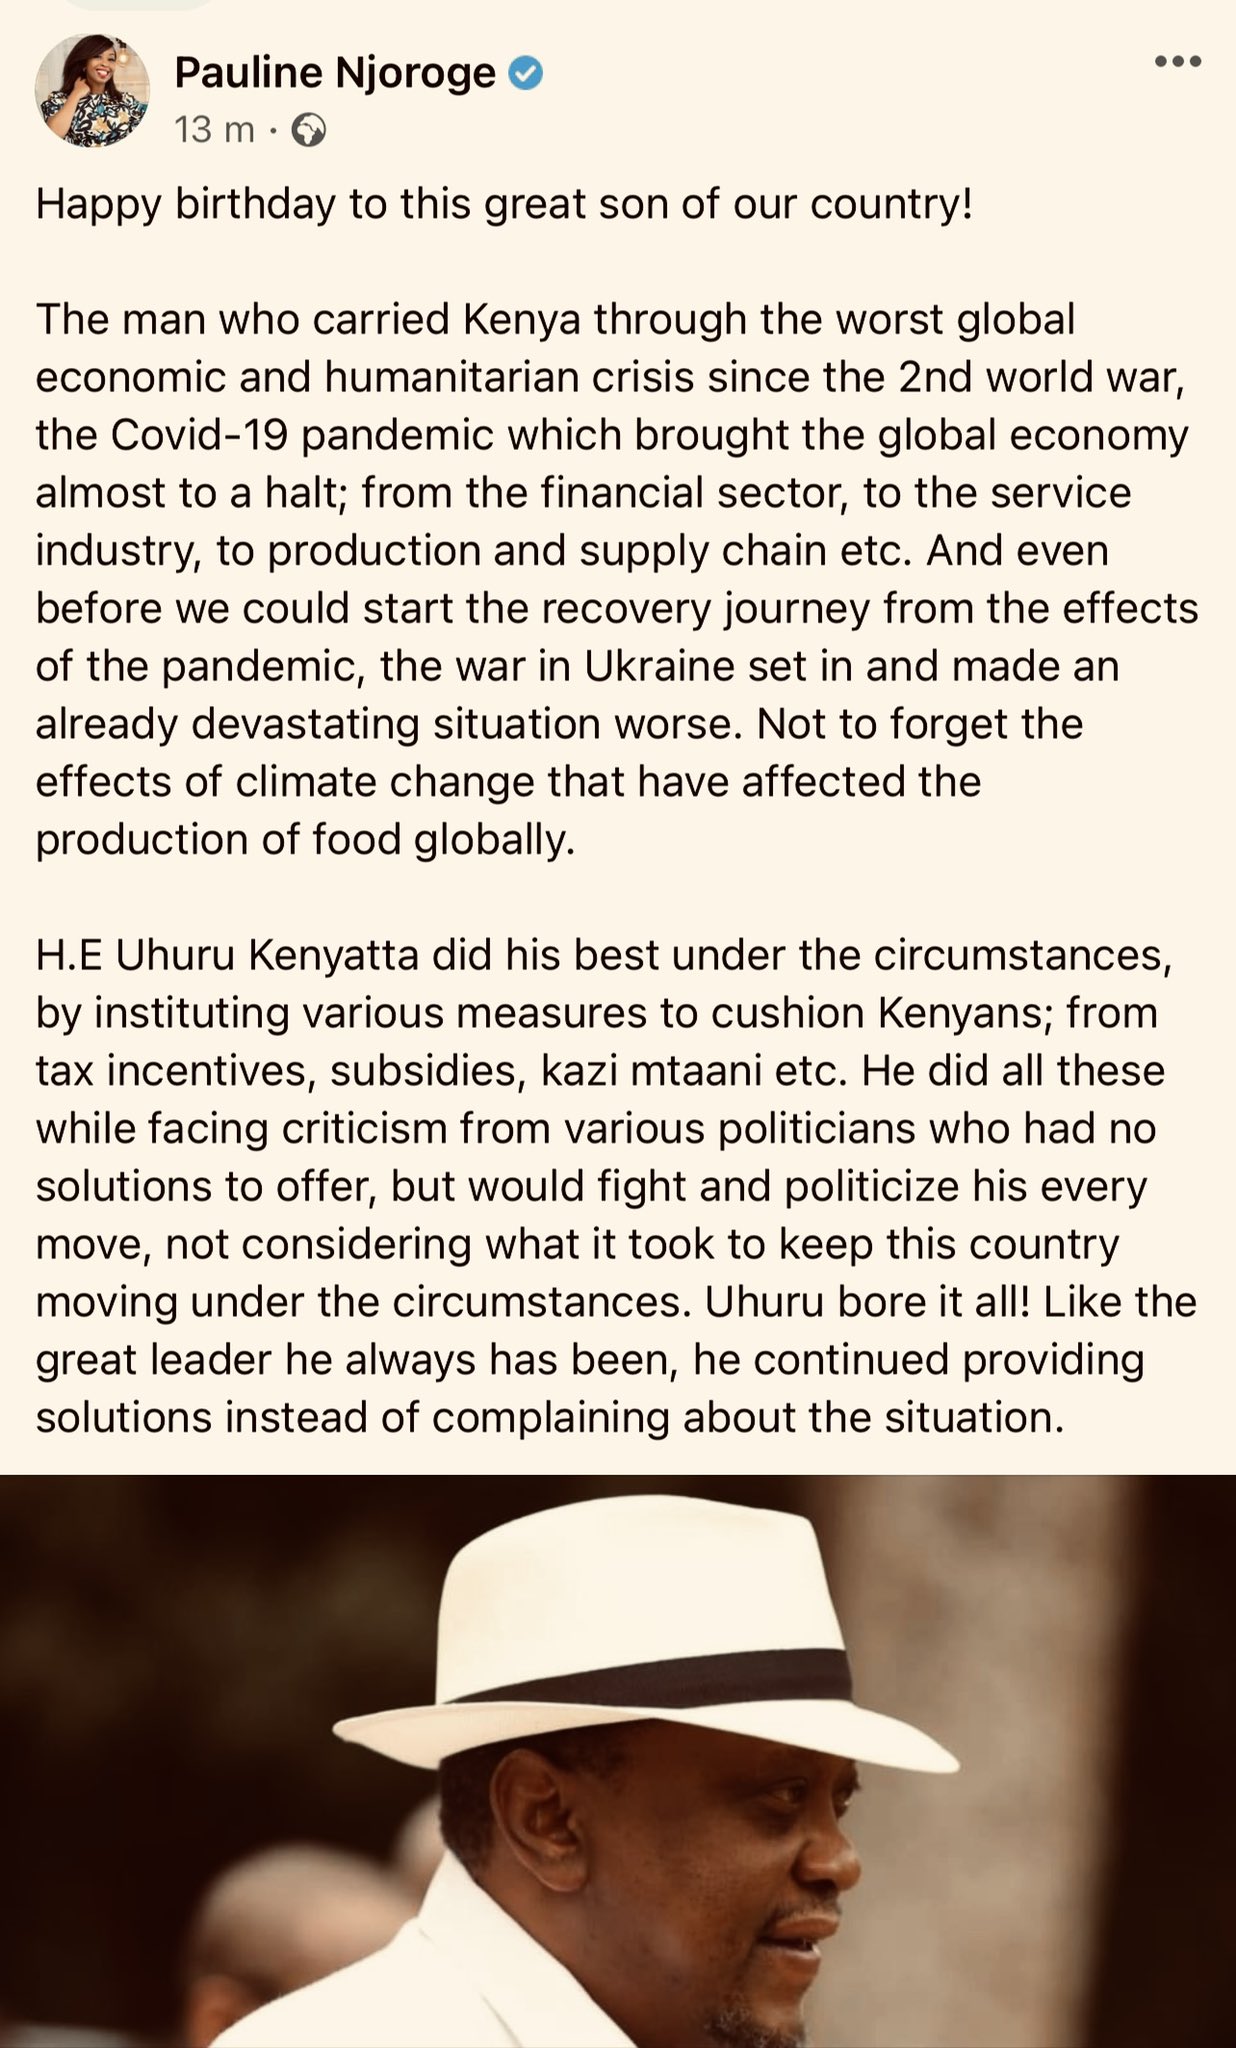 Happy birthday H.E Uhuru Kenyatta. 